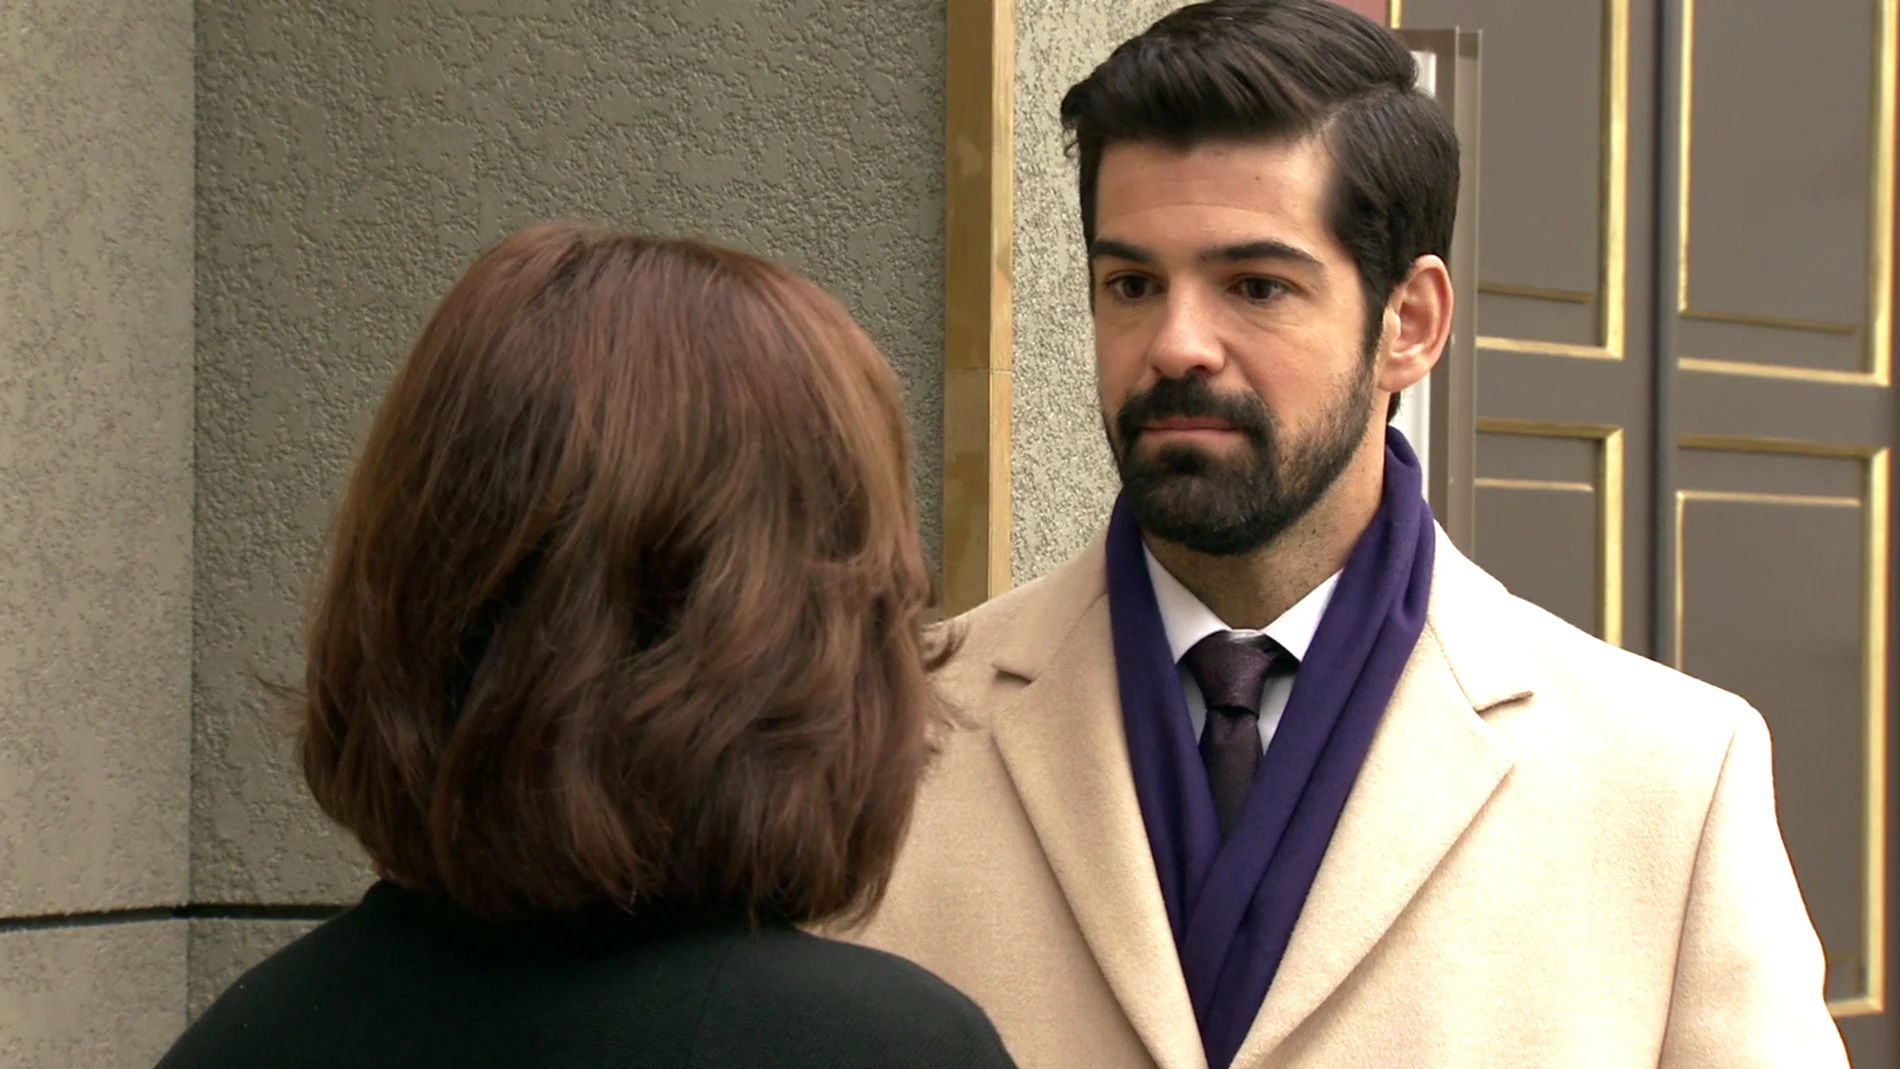 Alonso, muy preocupado, pregunta a Rosalía por la falta de interés de Marta